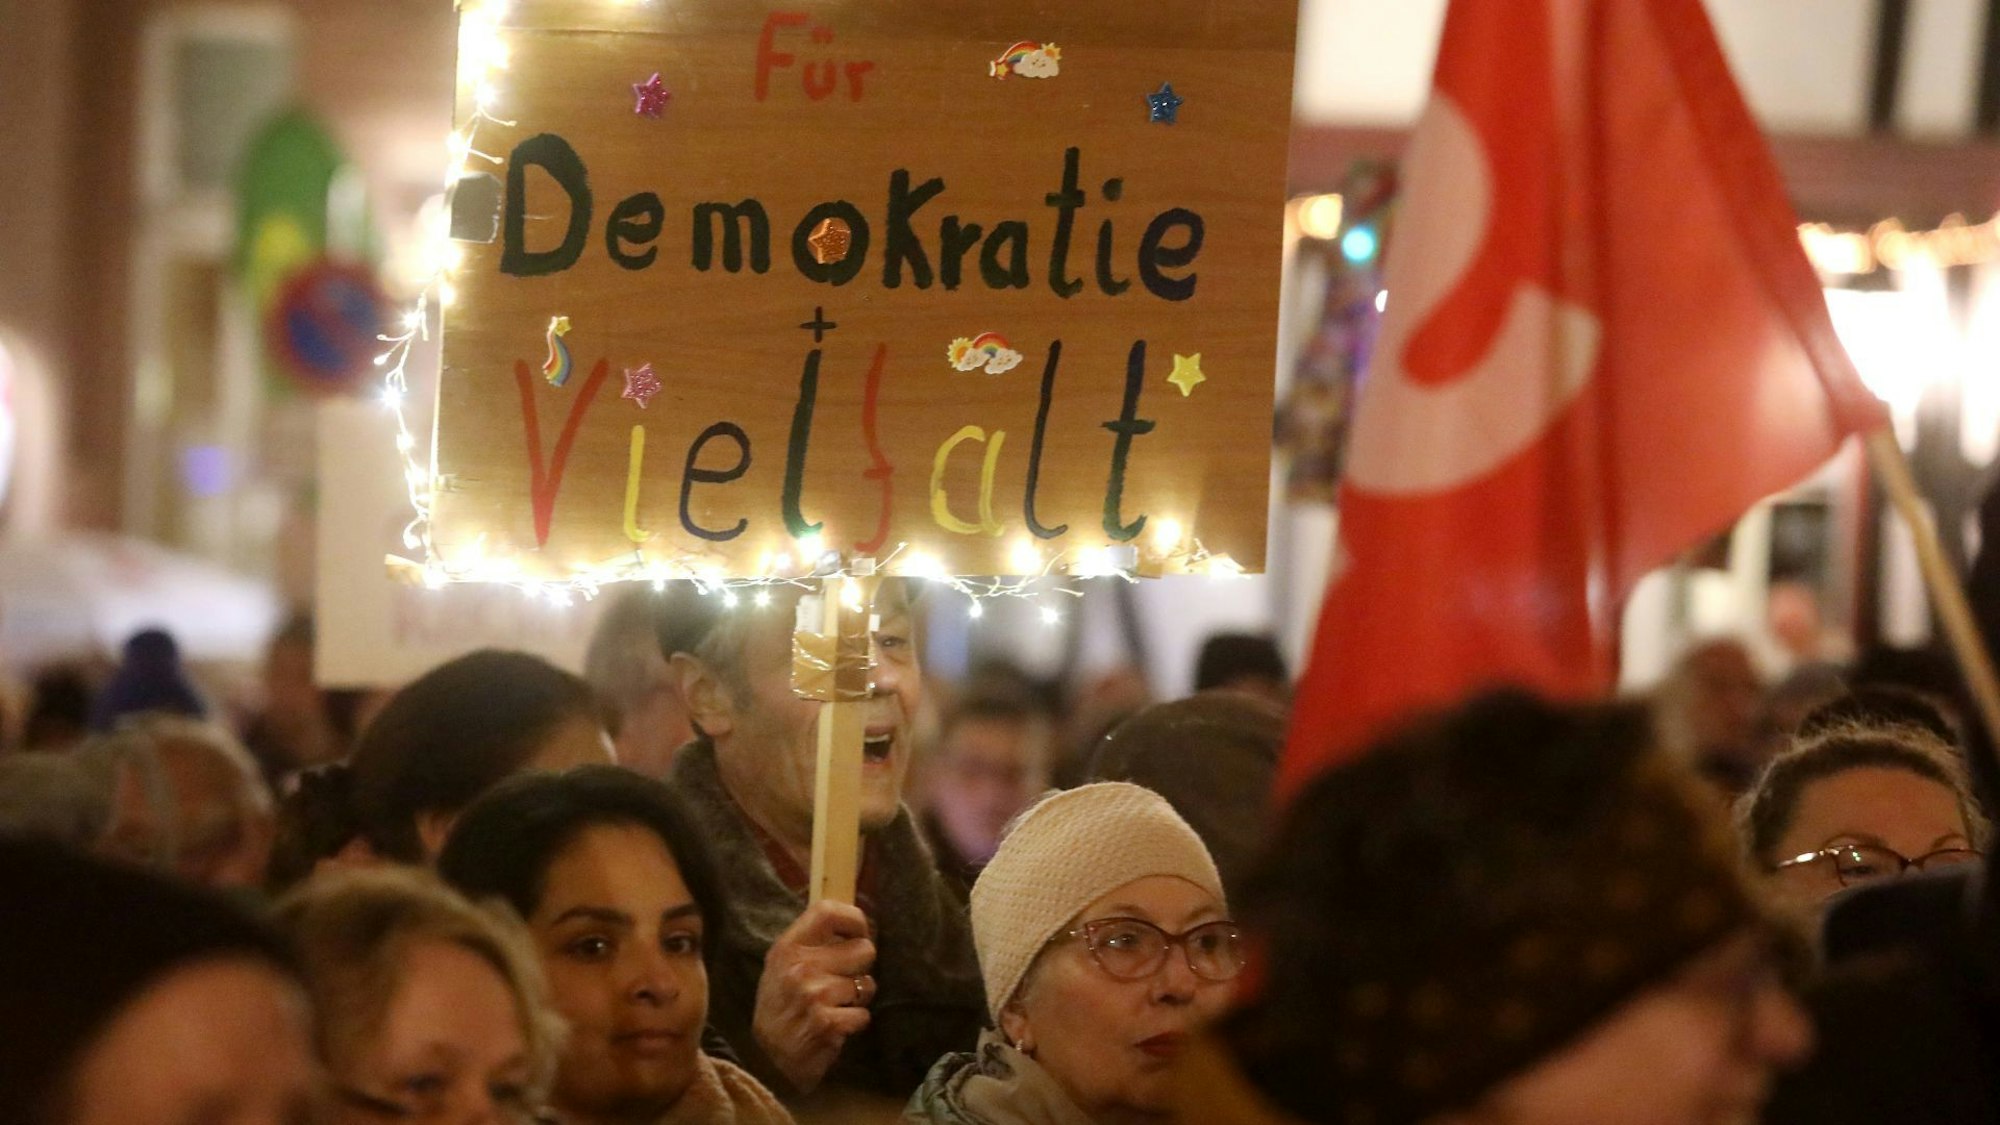 Teilnehmer einer Kundgebung halten Fahnen und Protestschilder. „Für Demokratie und Vielfalt“ steht auf einem bunten Schild mit Lichterkette.